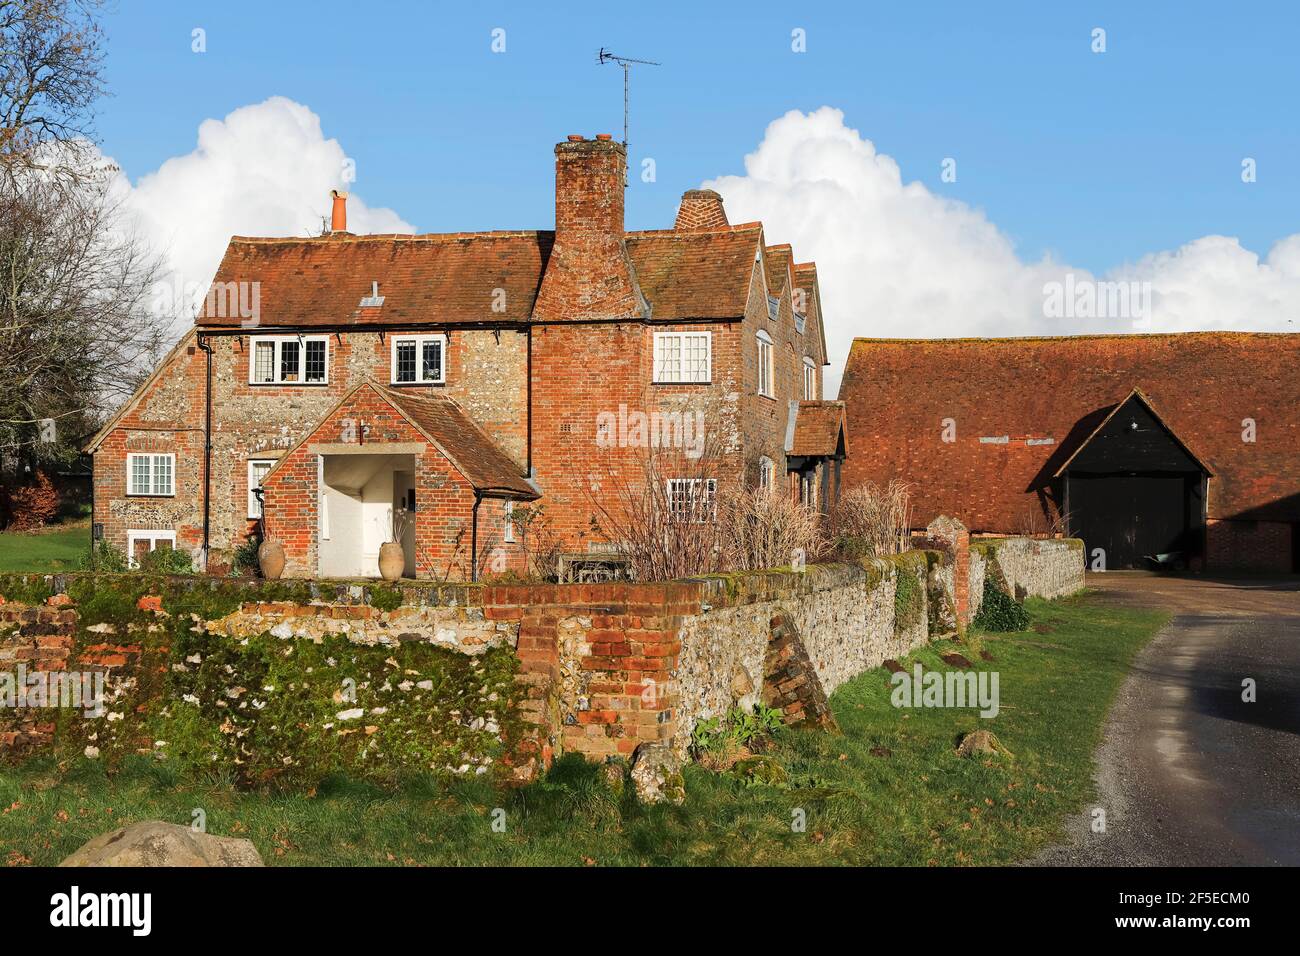 Hollandridge Farm (ferme construite en 1800), un bâtiment en briques et en pierre, un style souvent vu dans les collines Chalk Chilterns ; près de Northend, Oxfordshire, Royaume-Uni Banque D'Images